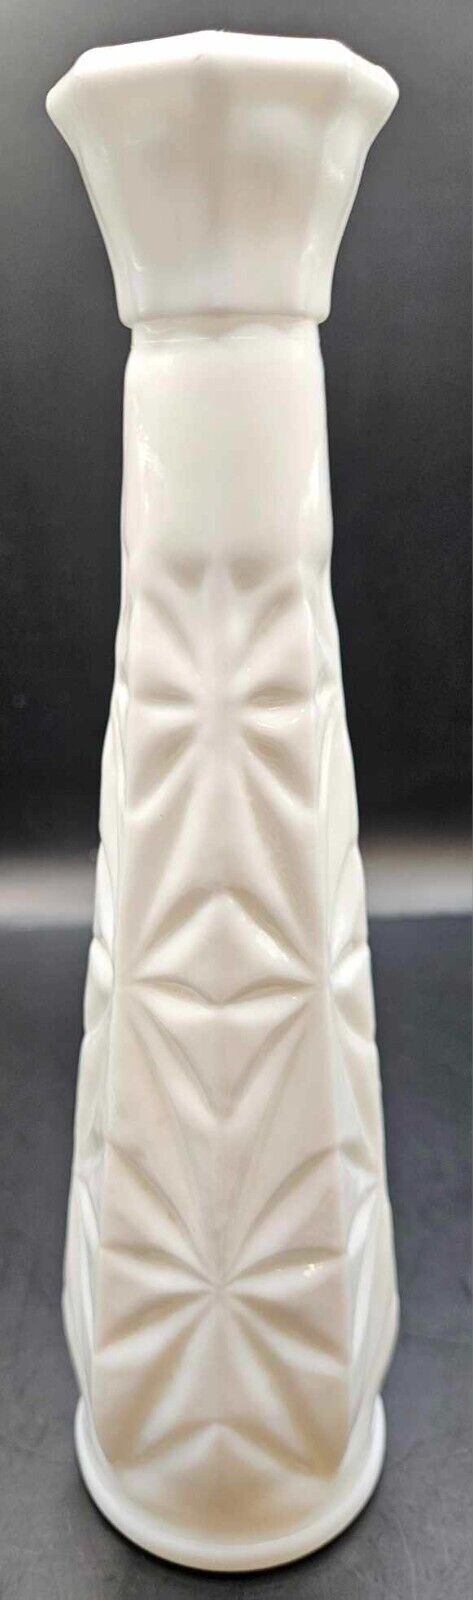 Vintage Milk glass bud vase